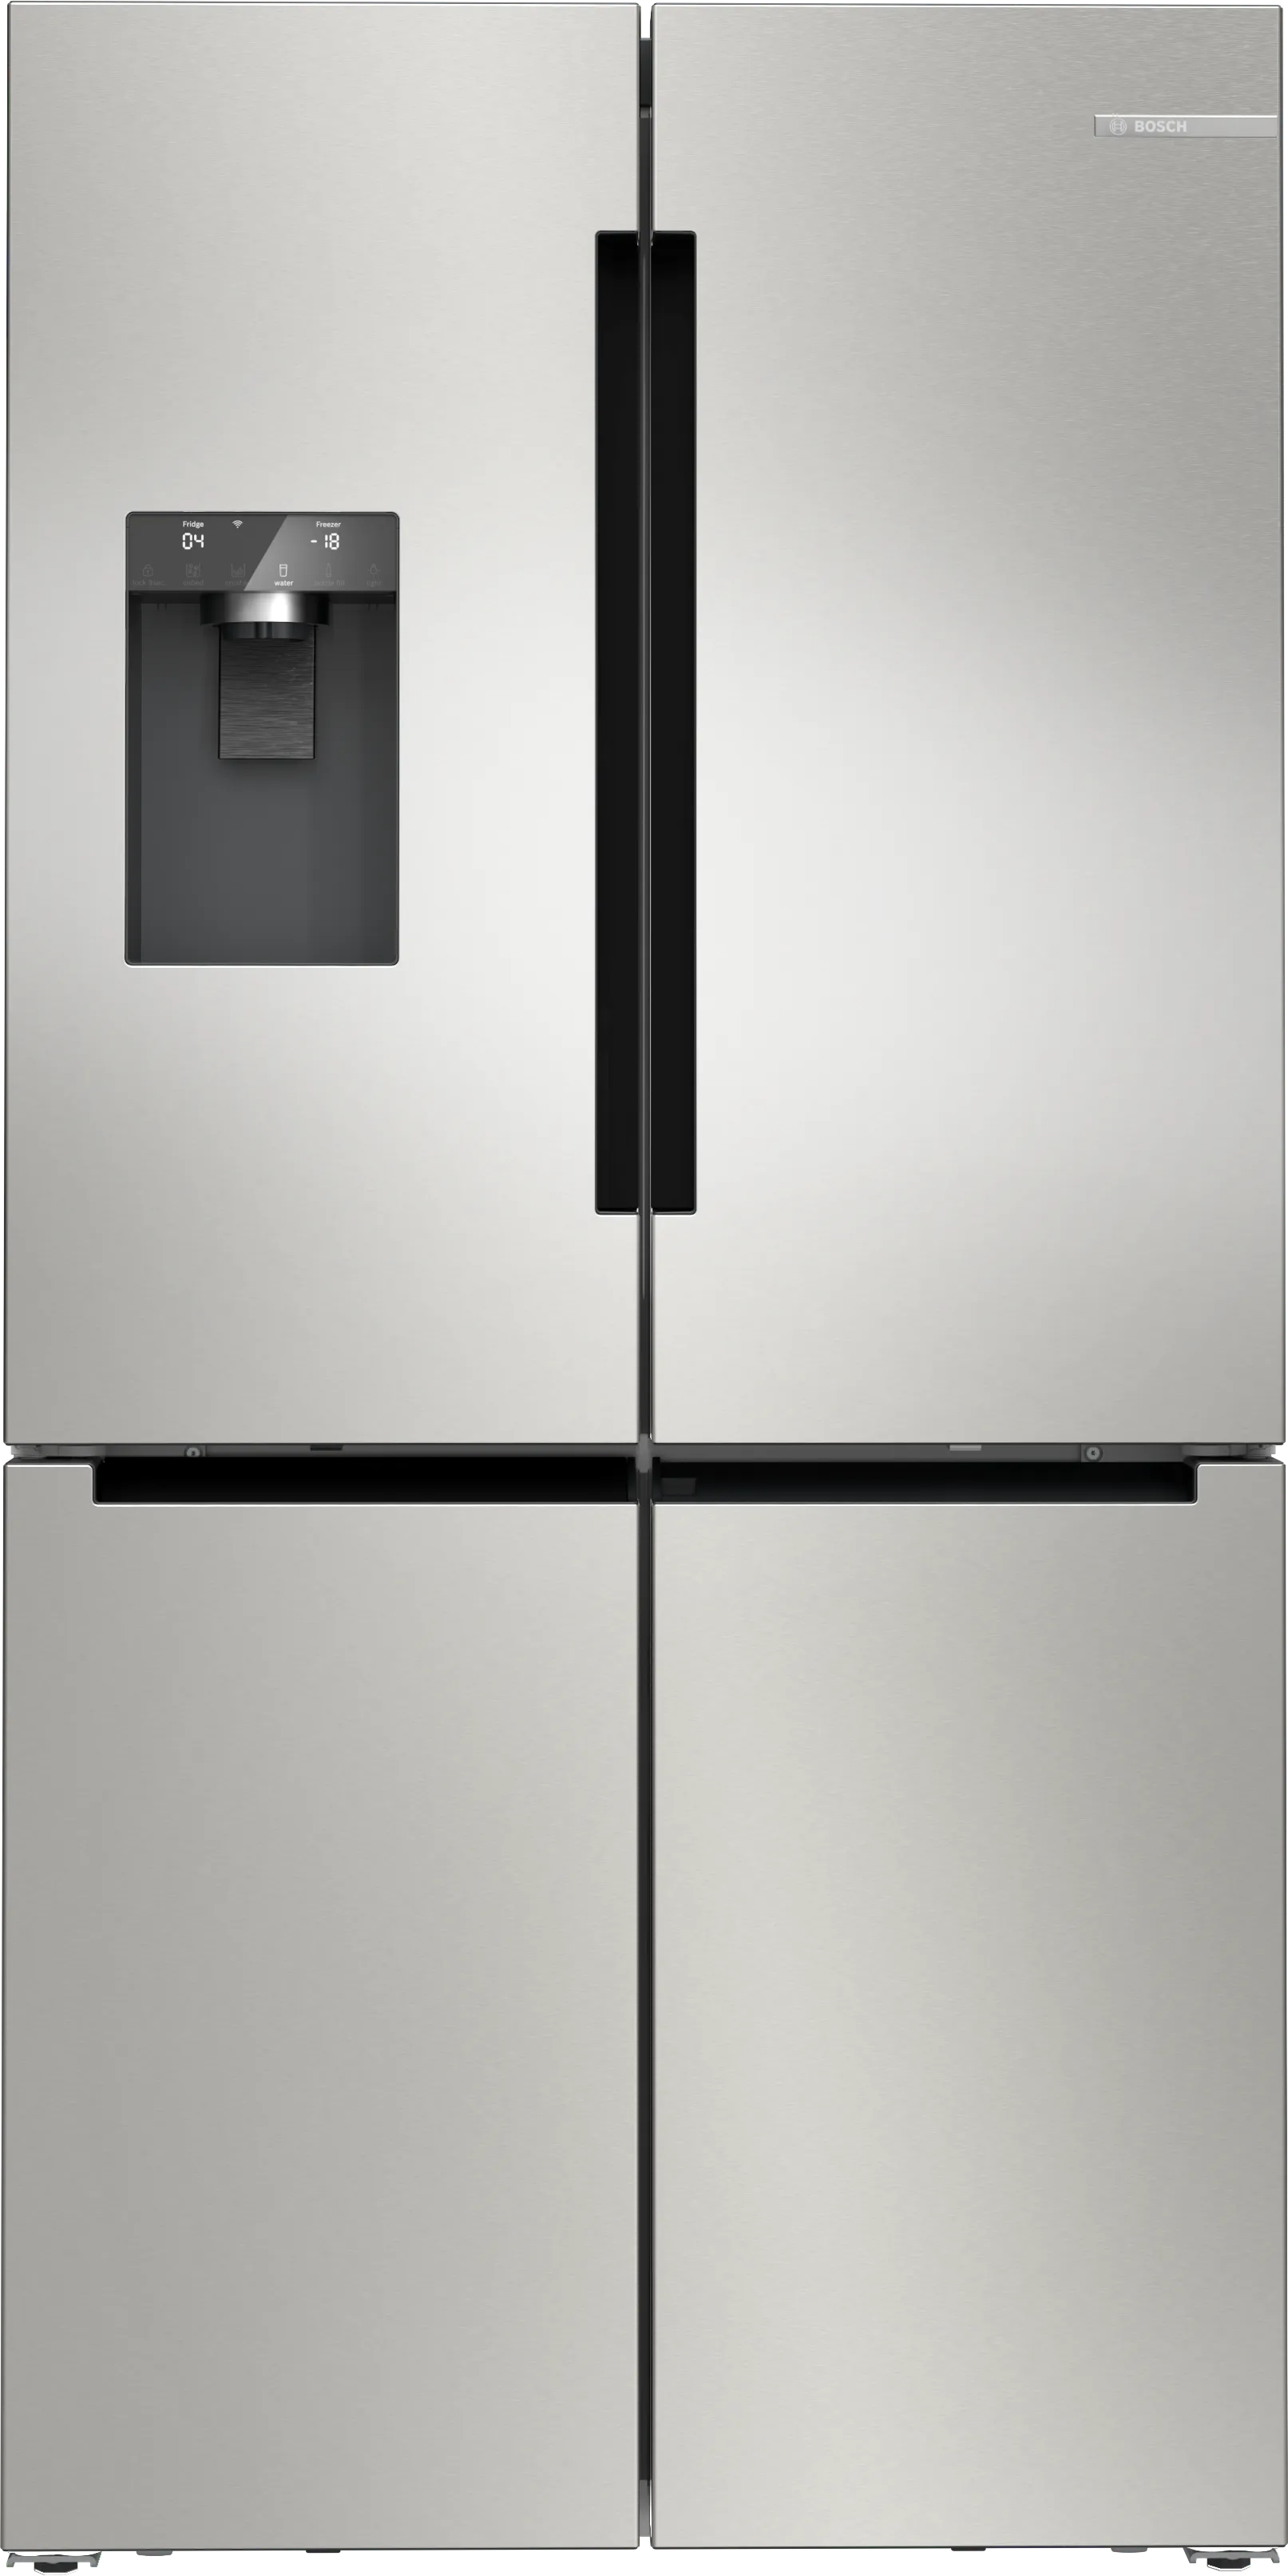 Series 6 French Door Bottom freezer, multi door 183 x 90.5 cm Brushed steel anti-fingerprint 